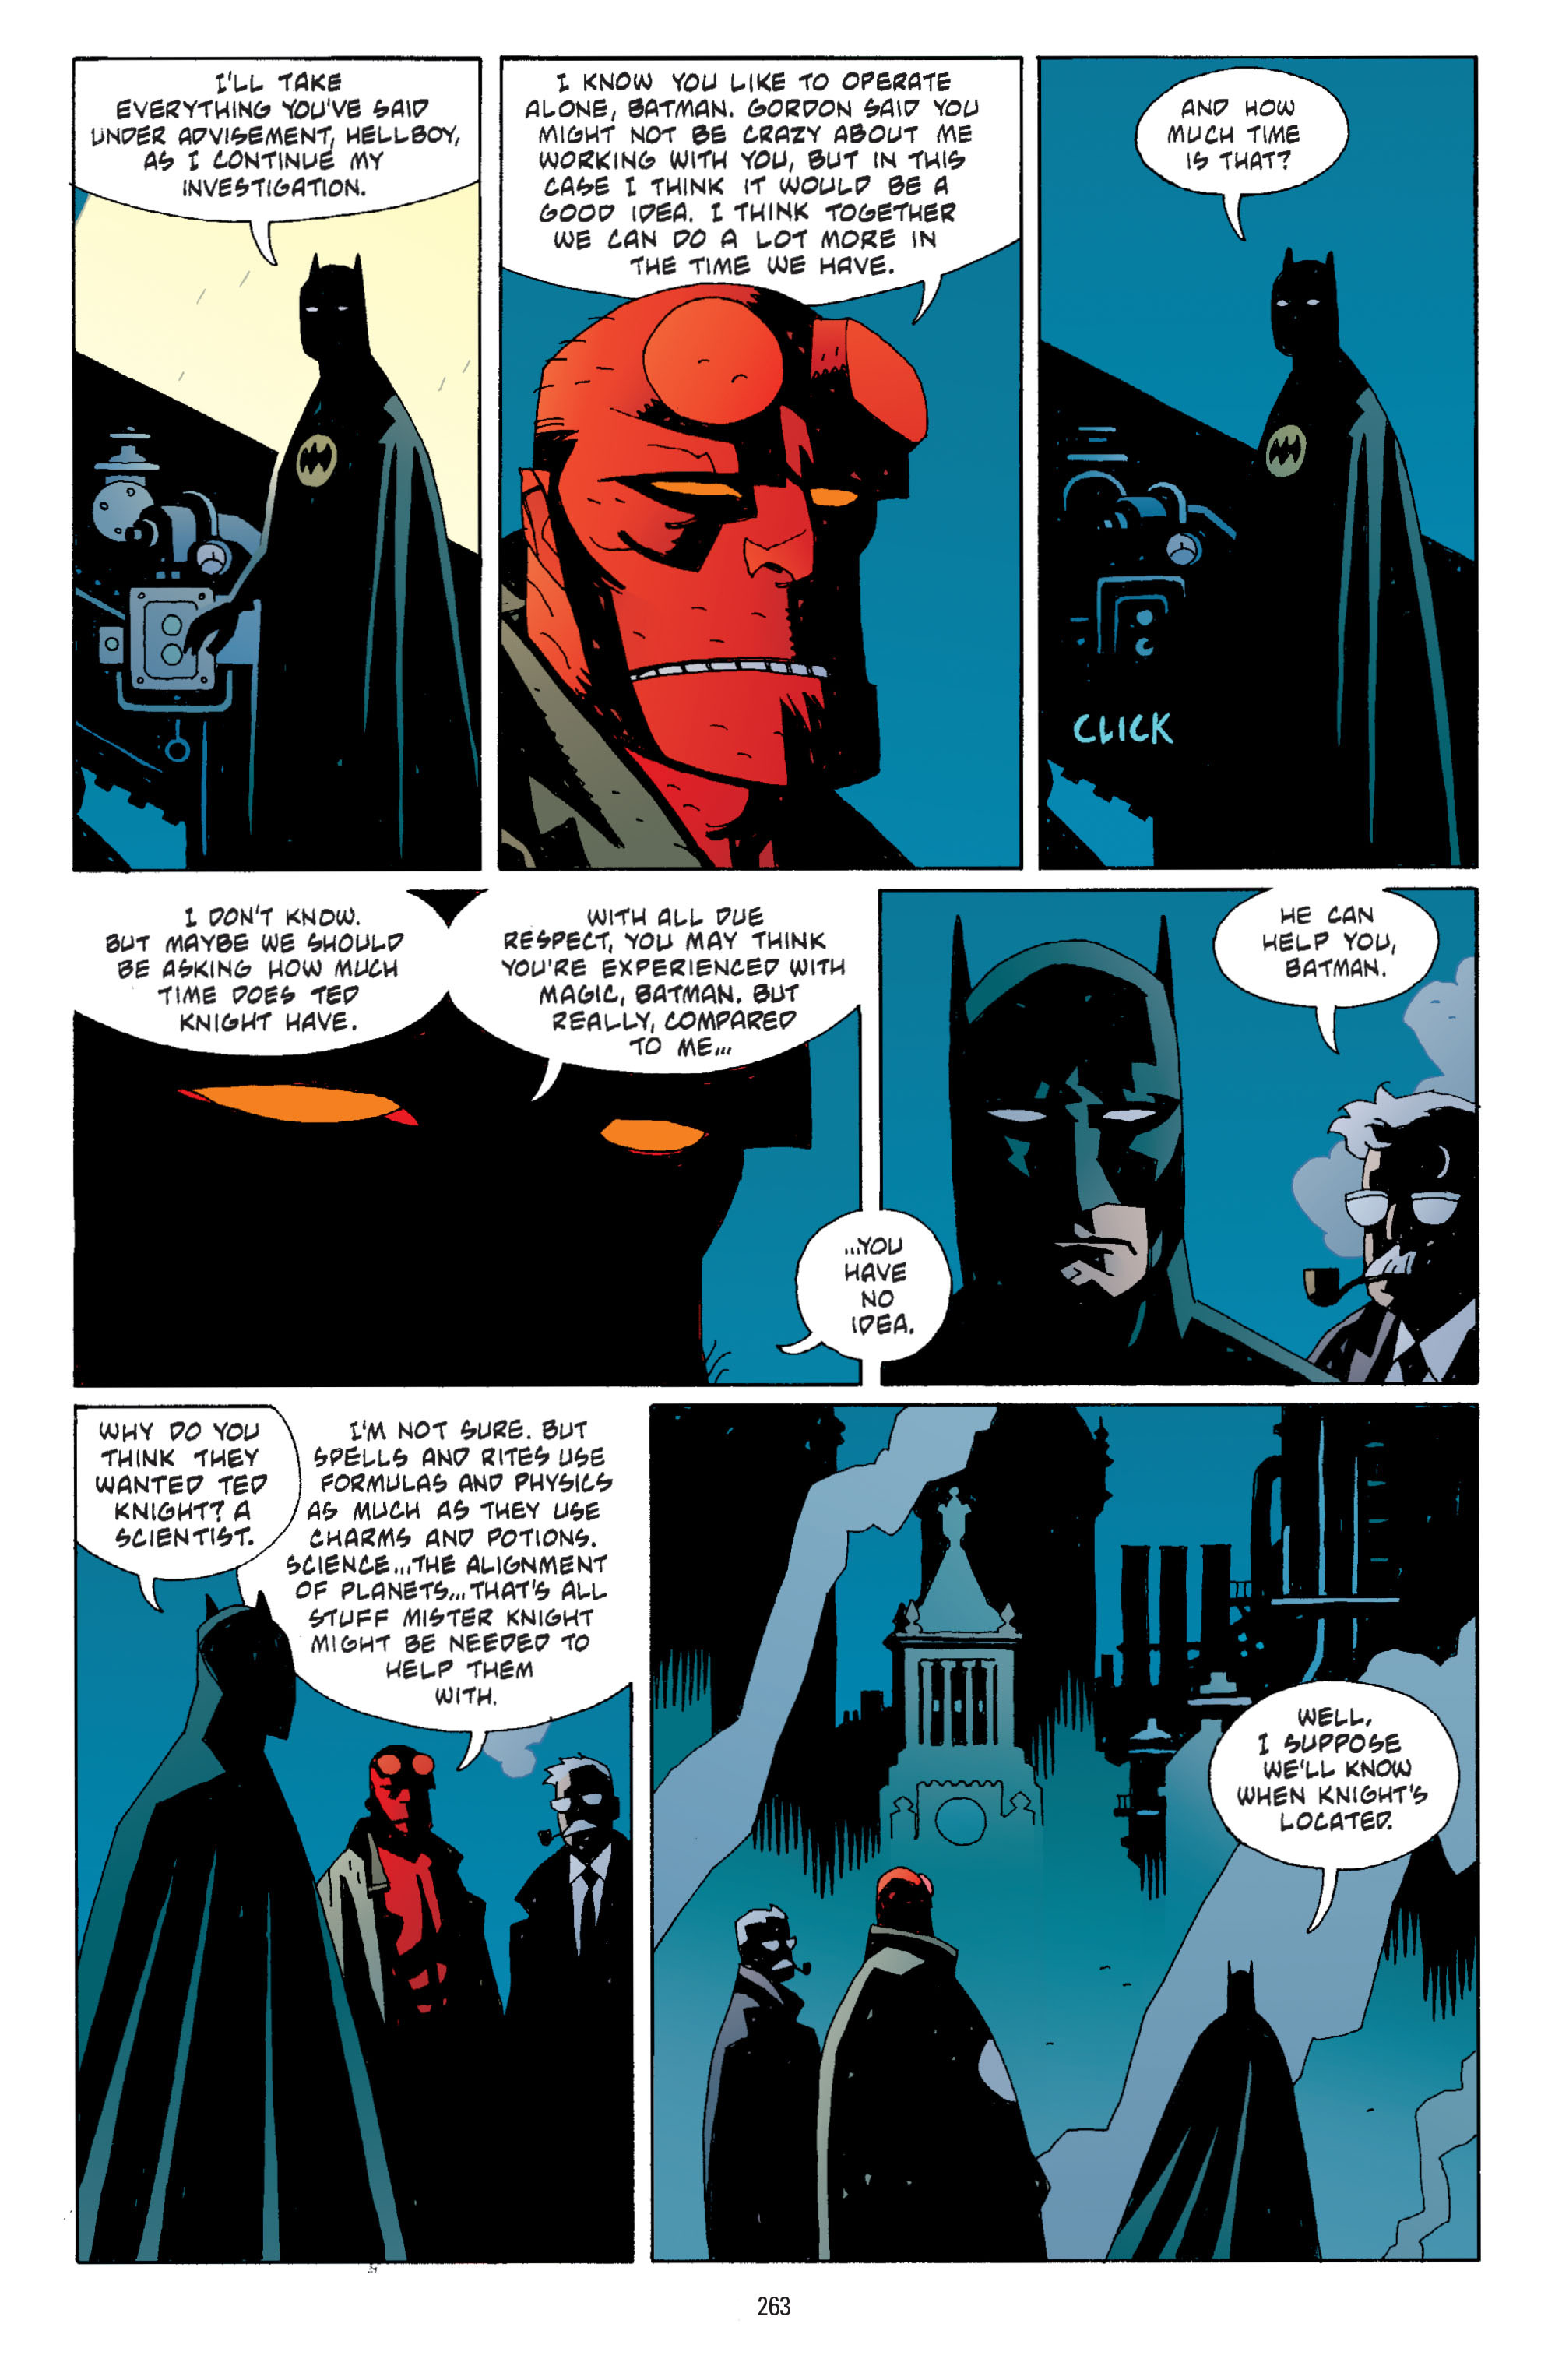 DC Comics/Dark Horse Comics: Justice League Full #1 - English 254